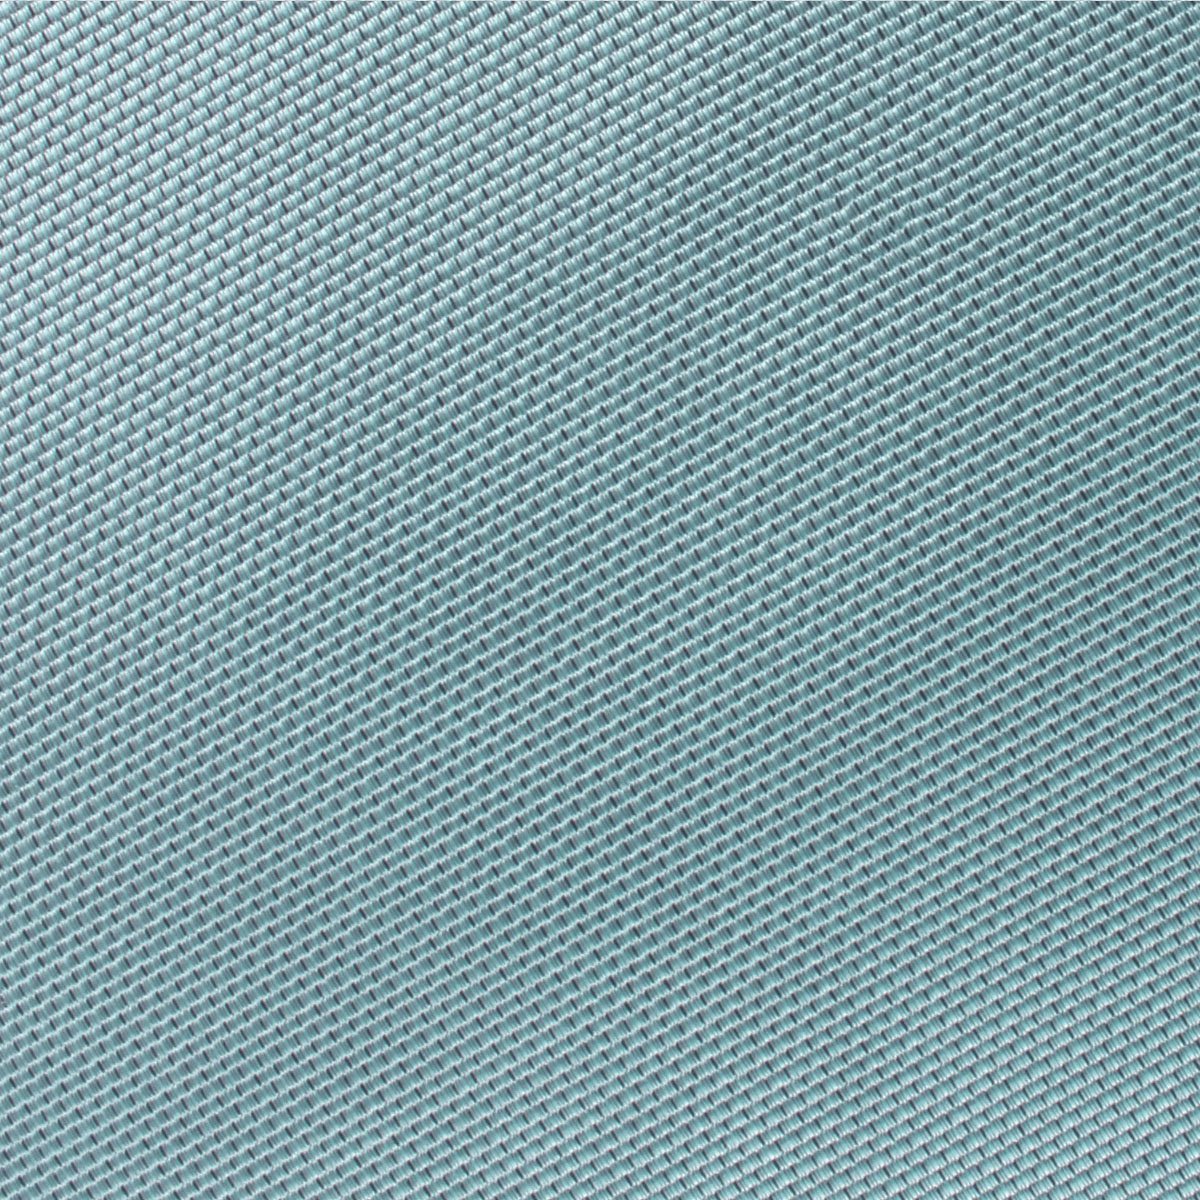 Turkish Teal Blue Weave Necktie Fabric